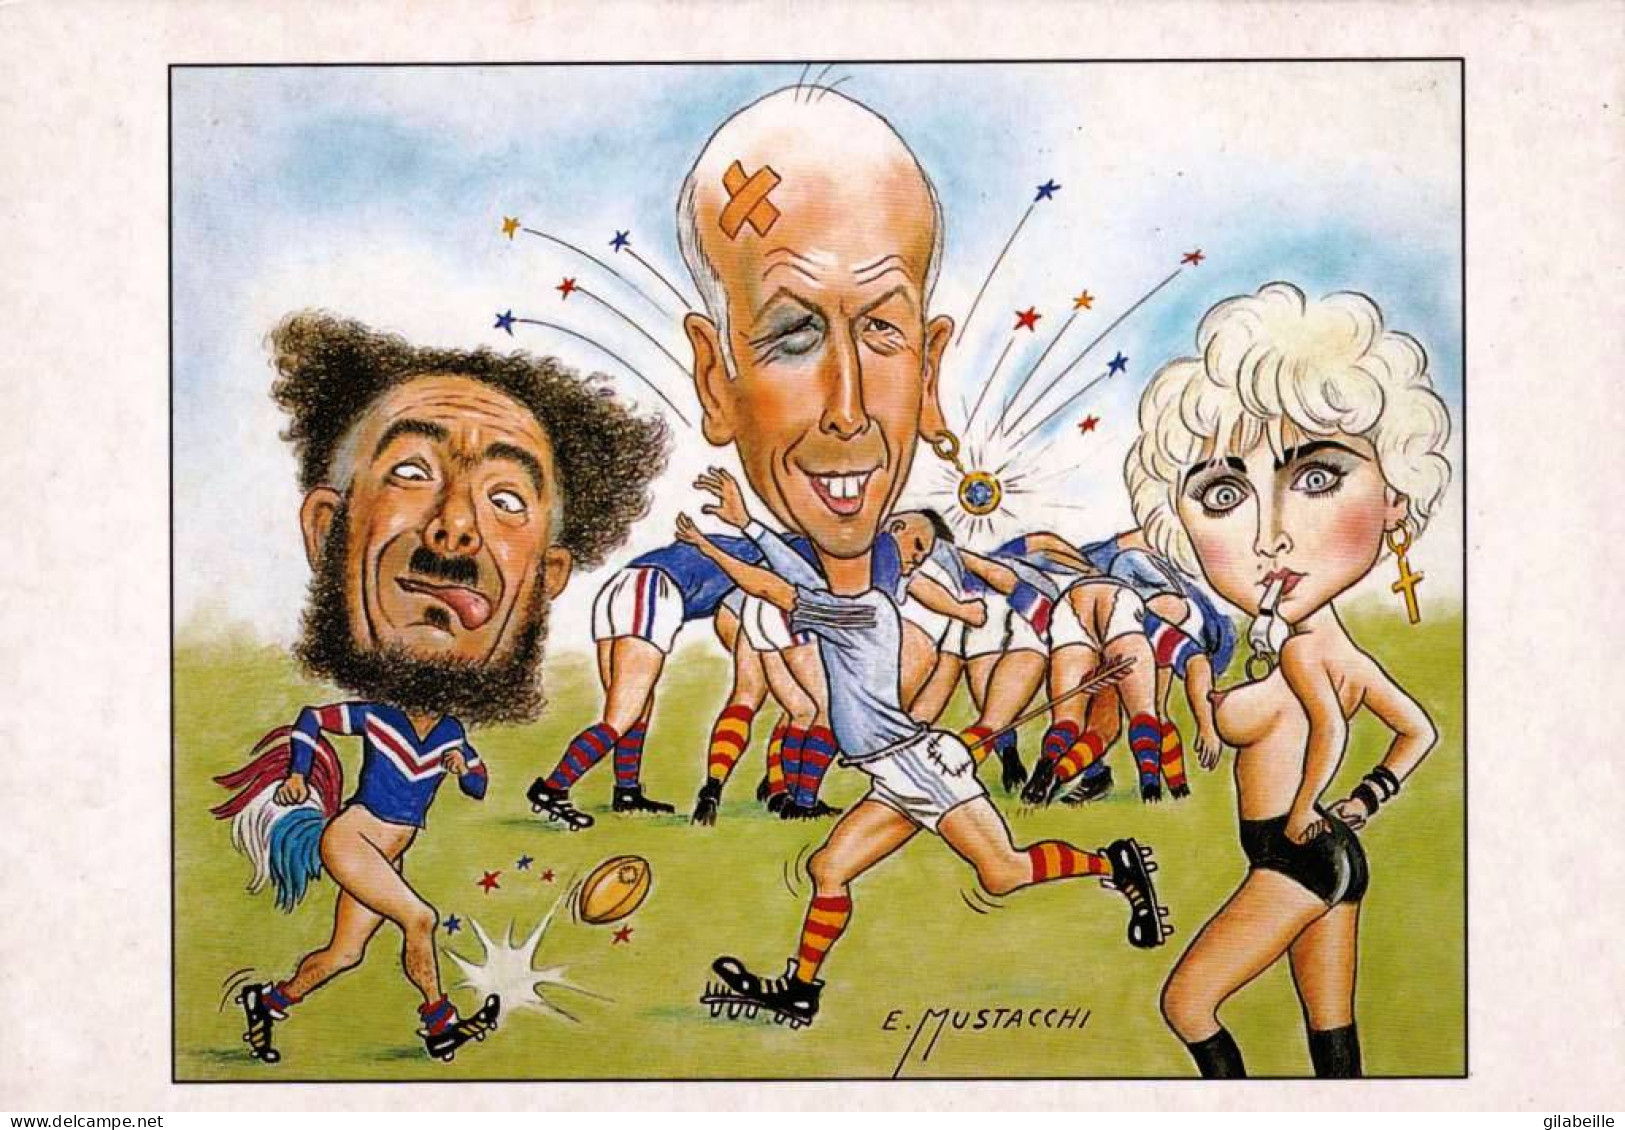  Illustrateur - Giscard D'Estaing Jouant Au Rugby Par Le Dessinateur E.MUSTACCHI - Non Classés